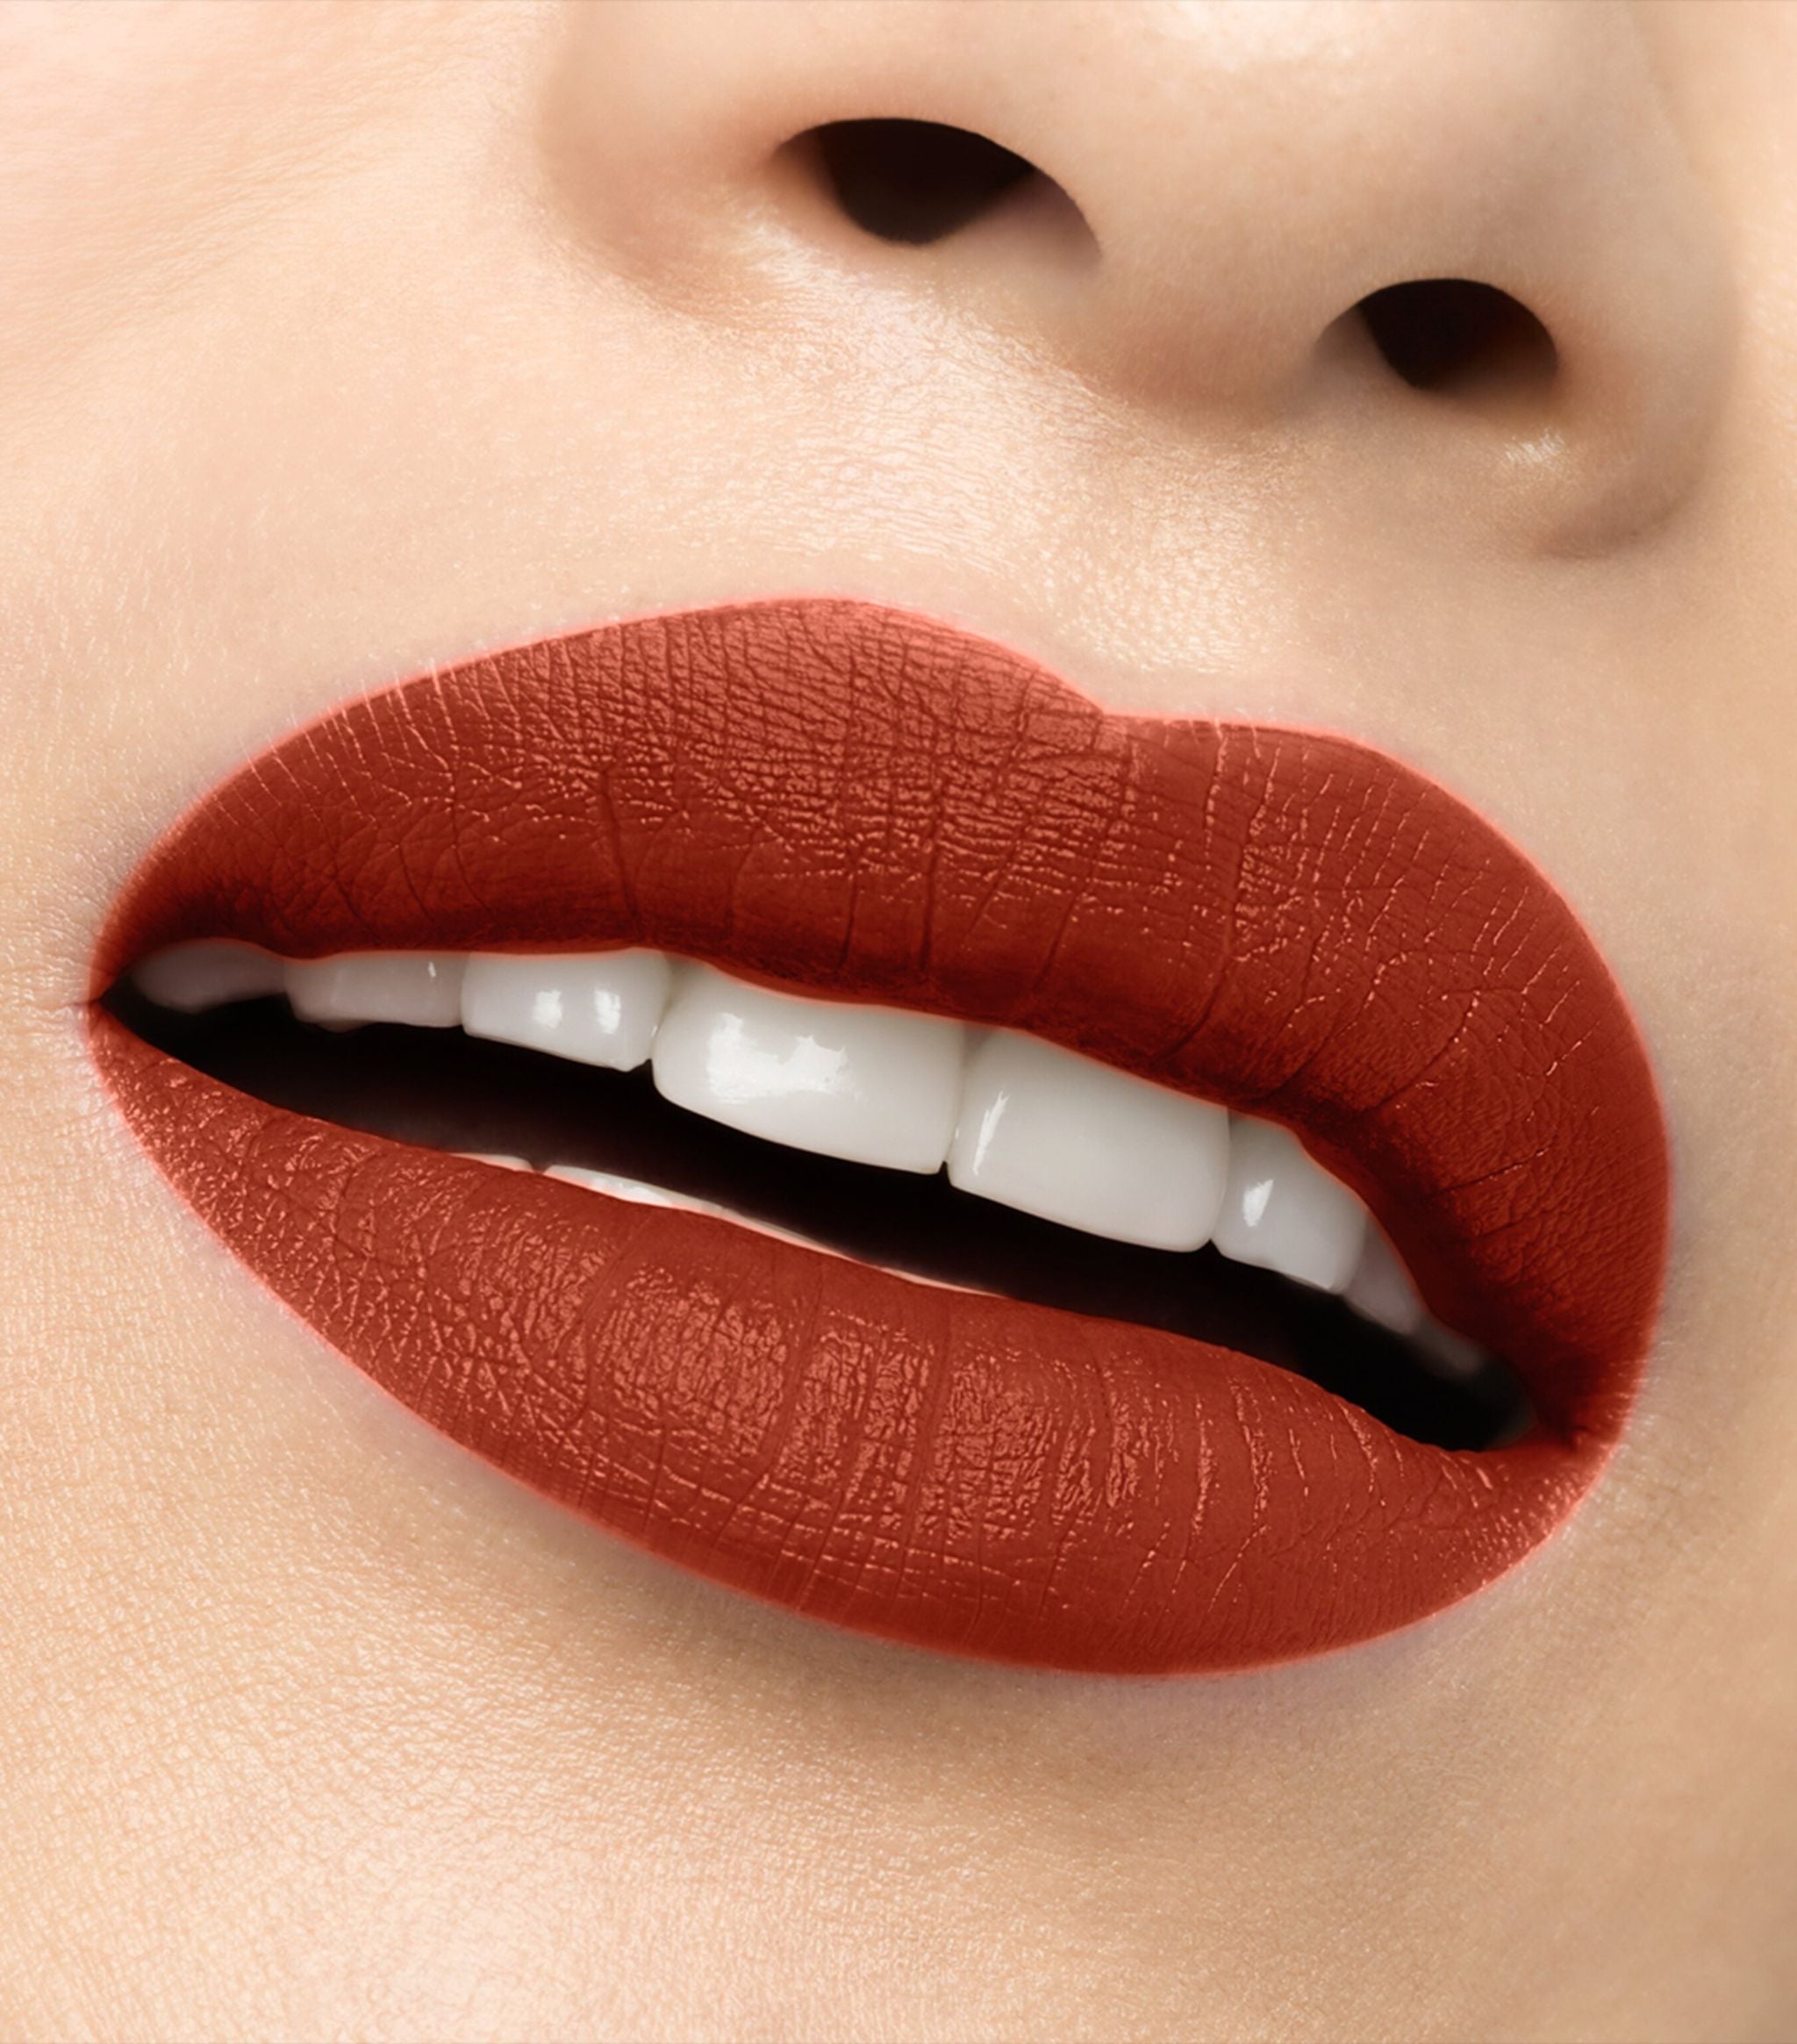 CHRISTIAN LOUBOUTIN - Rouge Louboutin Velvet Matte lipstick 3.8g